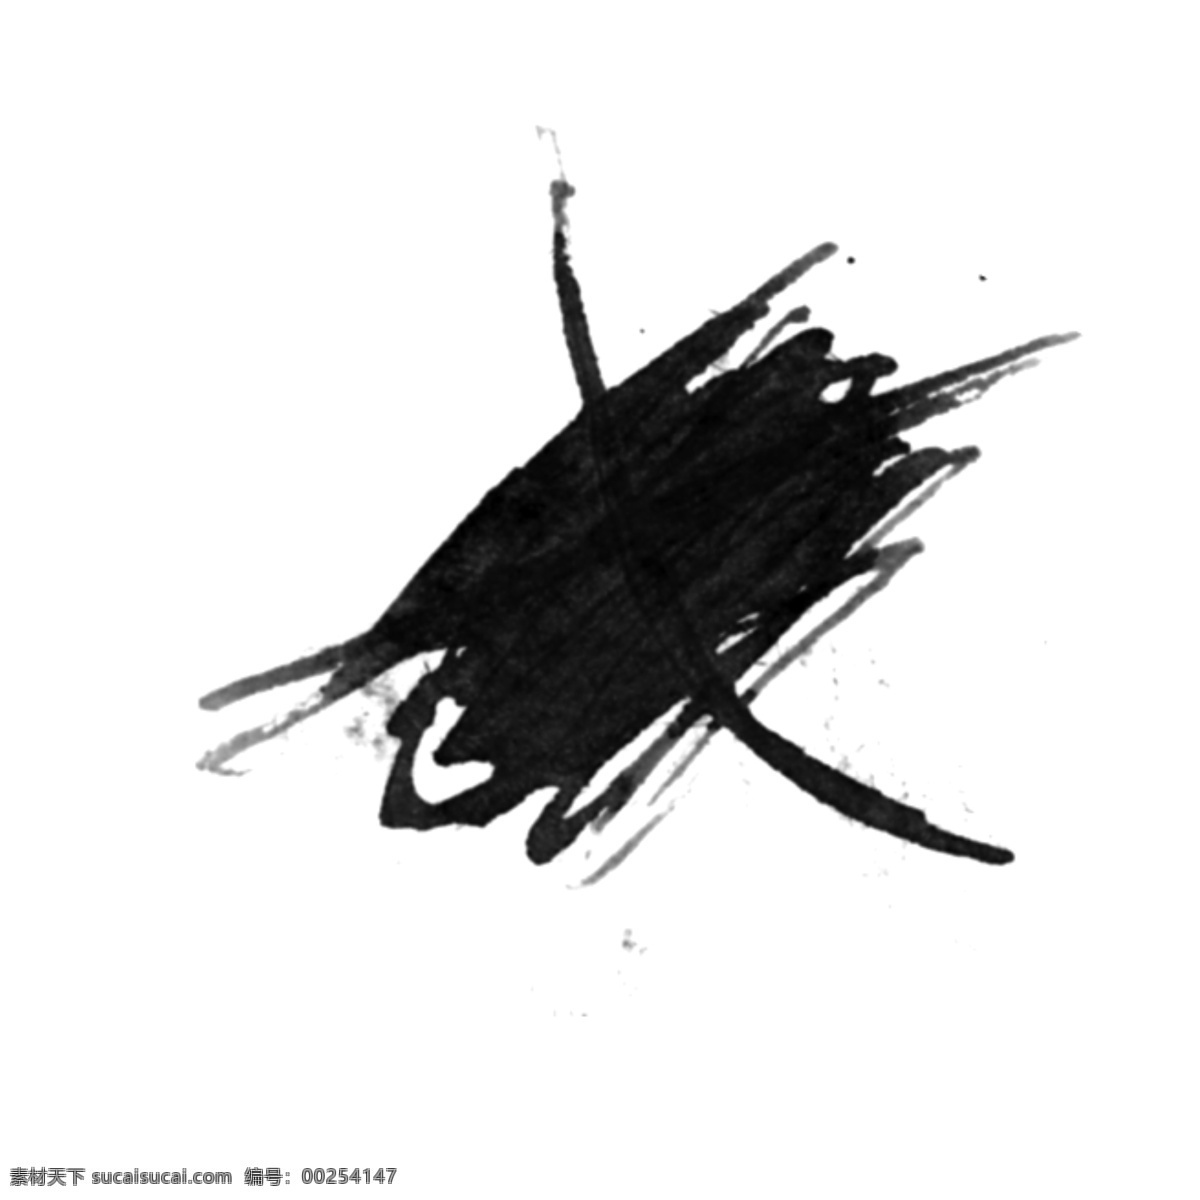 水彩 黑色 卡通 泼墨 创意 线条 抽象 中国风 手绘 水墨 不规则 新意 漂浮 个性 挥洒 墨水 连笔